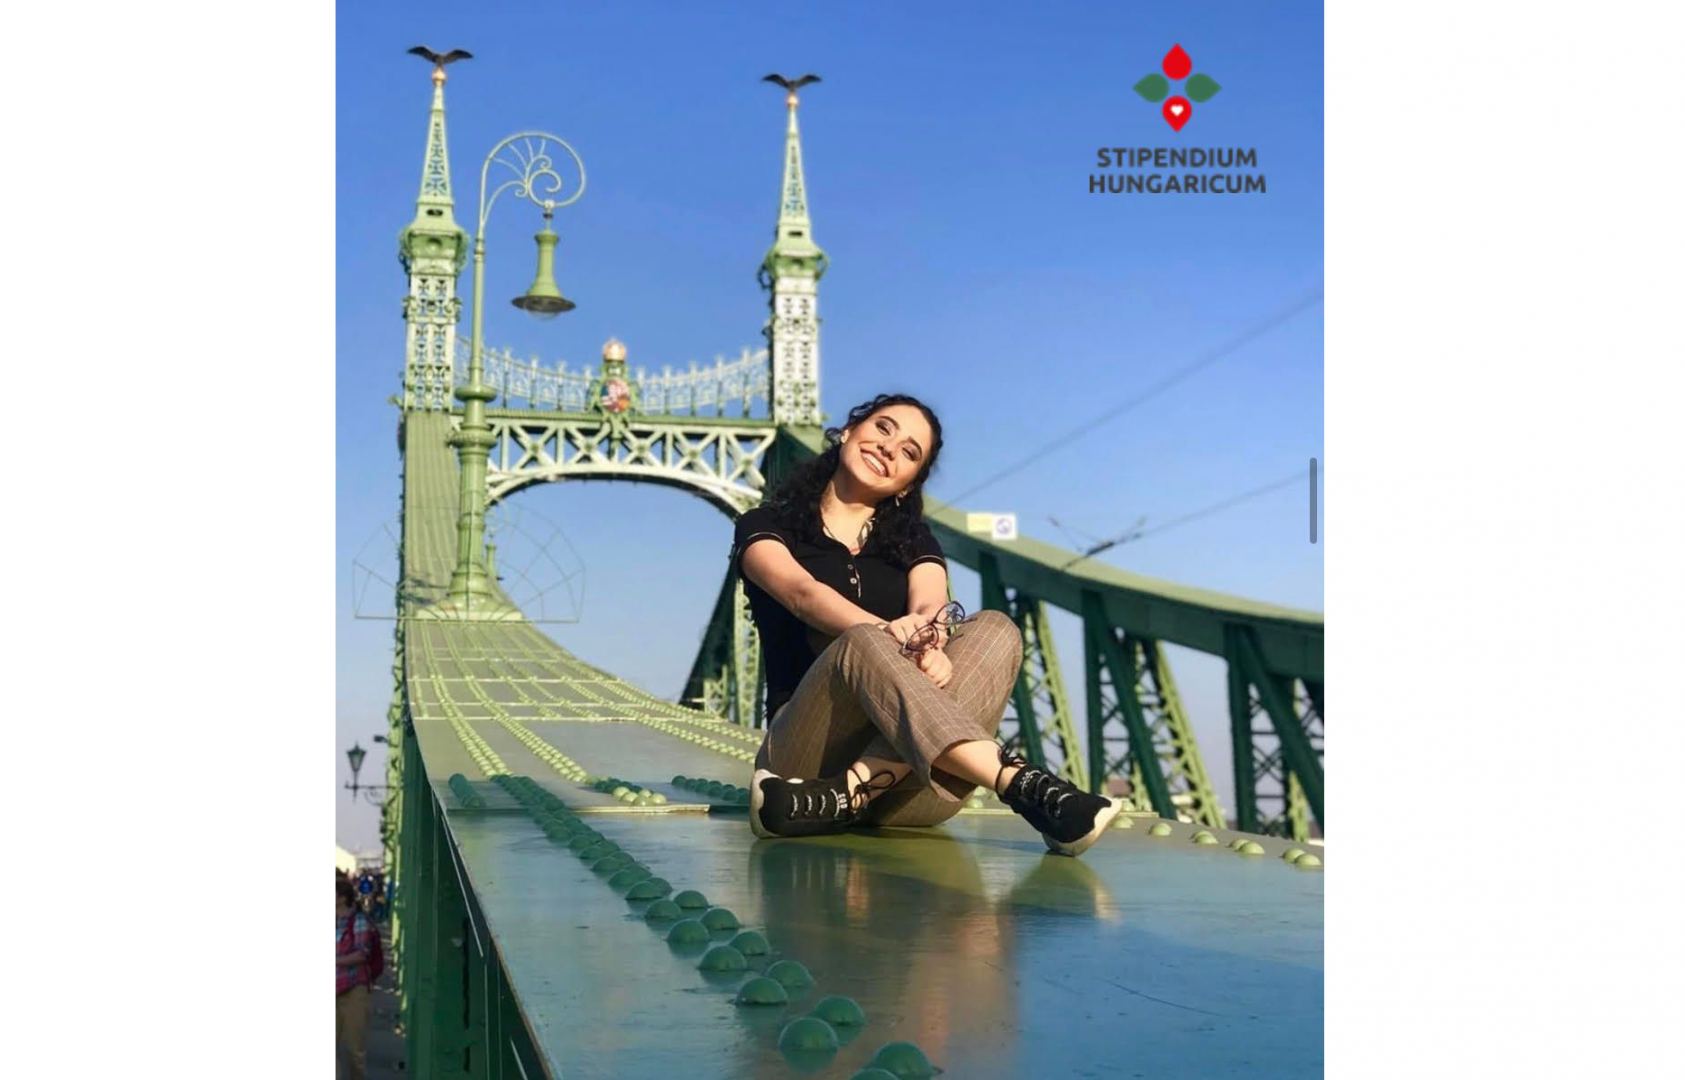 Hungary launches Stipendium Hungaricum scholarship programm